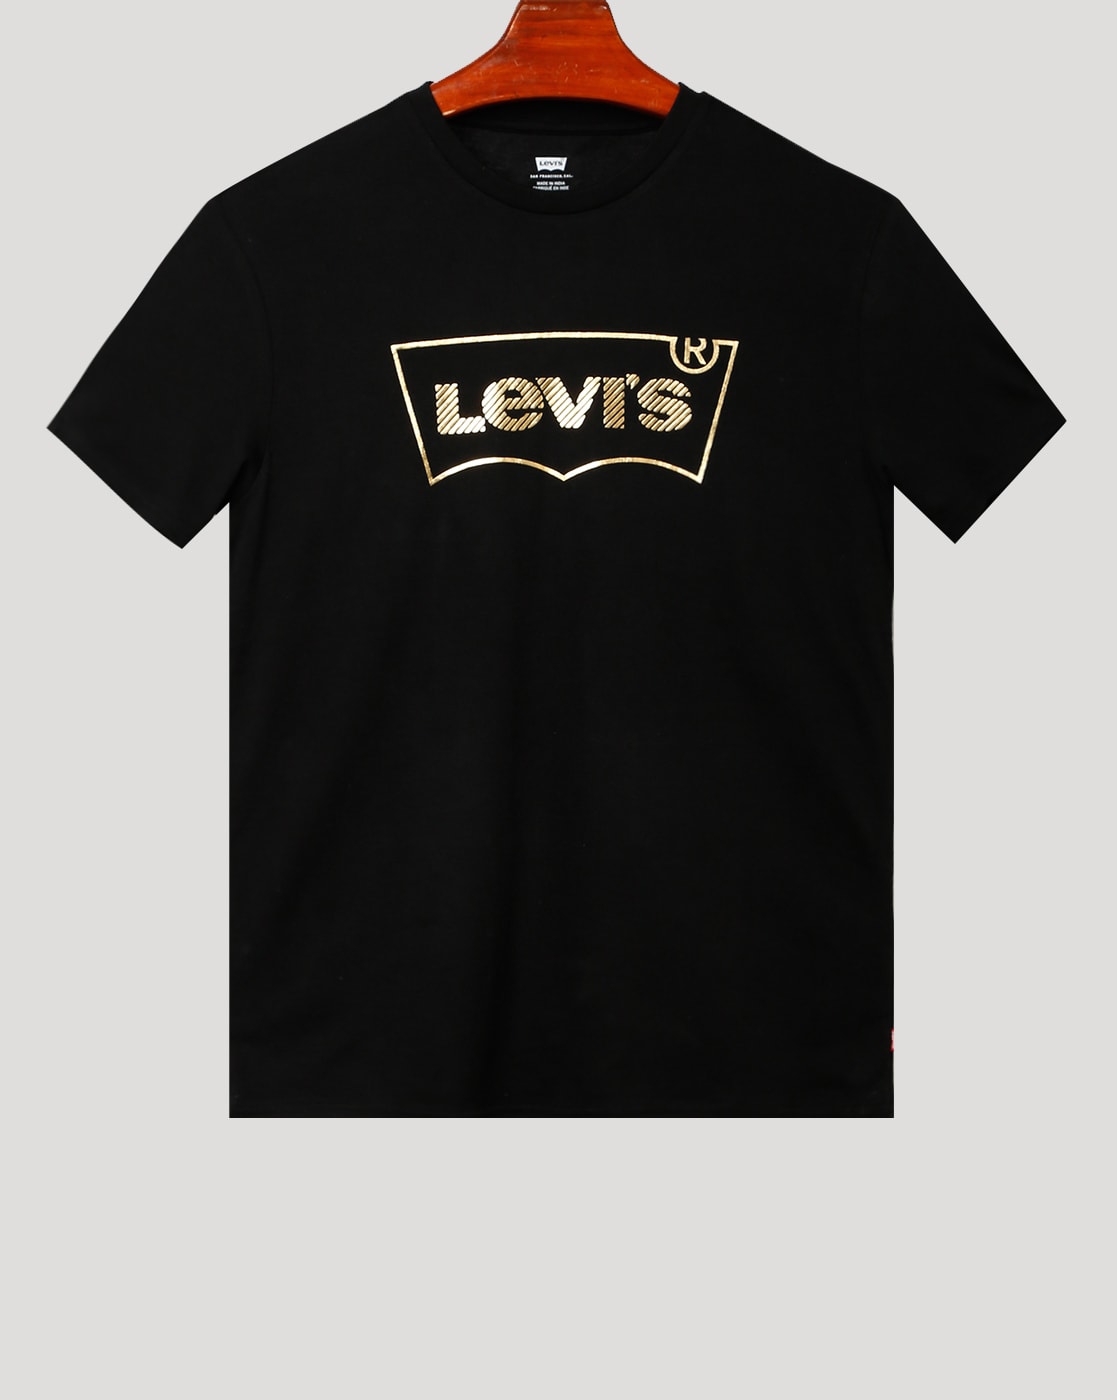 levis tshirt black